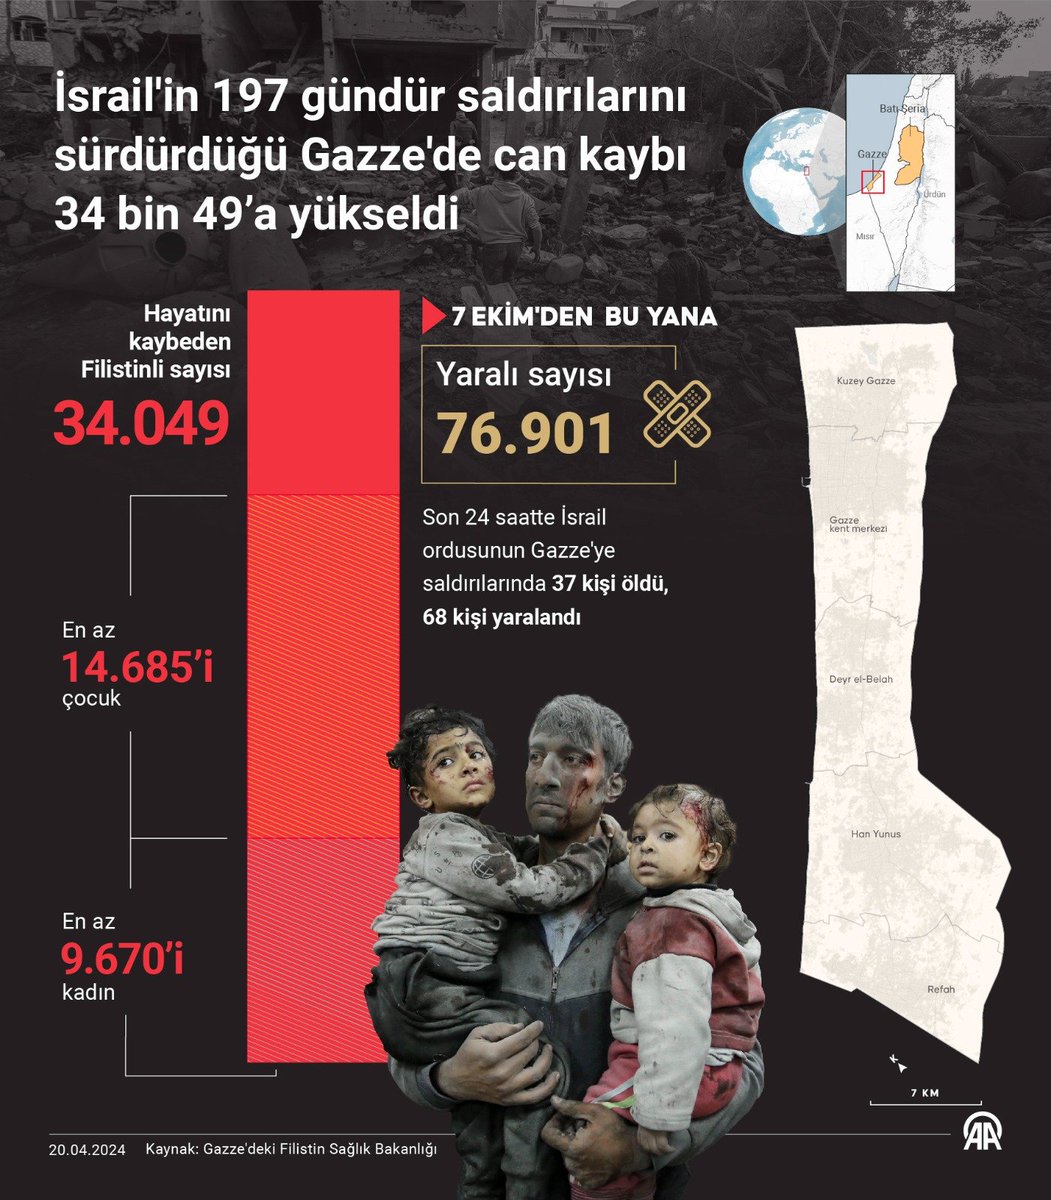 Nazi israil'in soykırımı devam ediyor ! 
7 ekimden bu yana

📢 34 bin 49 Filistinli hayatını kaybetti
📢 76 bin 901 kişi yaralandı

Ve içlerinden
👉 14 bin 685'i çocuk
👉 9 bin 670'i kadın
#StopGazaGenocide 
#StopArmingIsrael